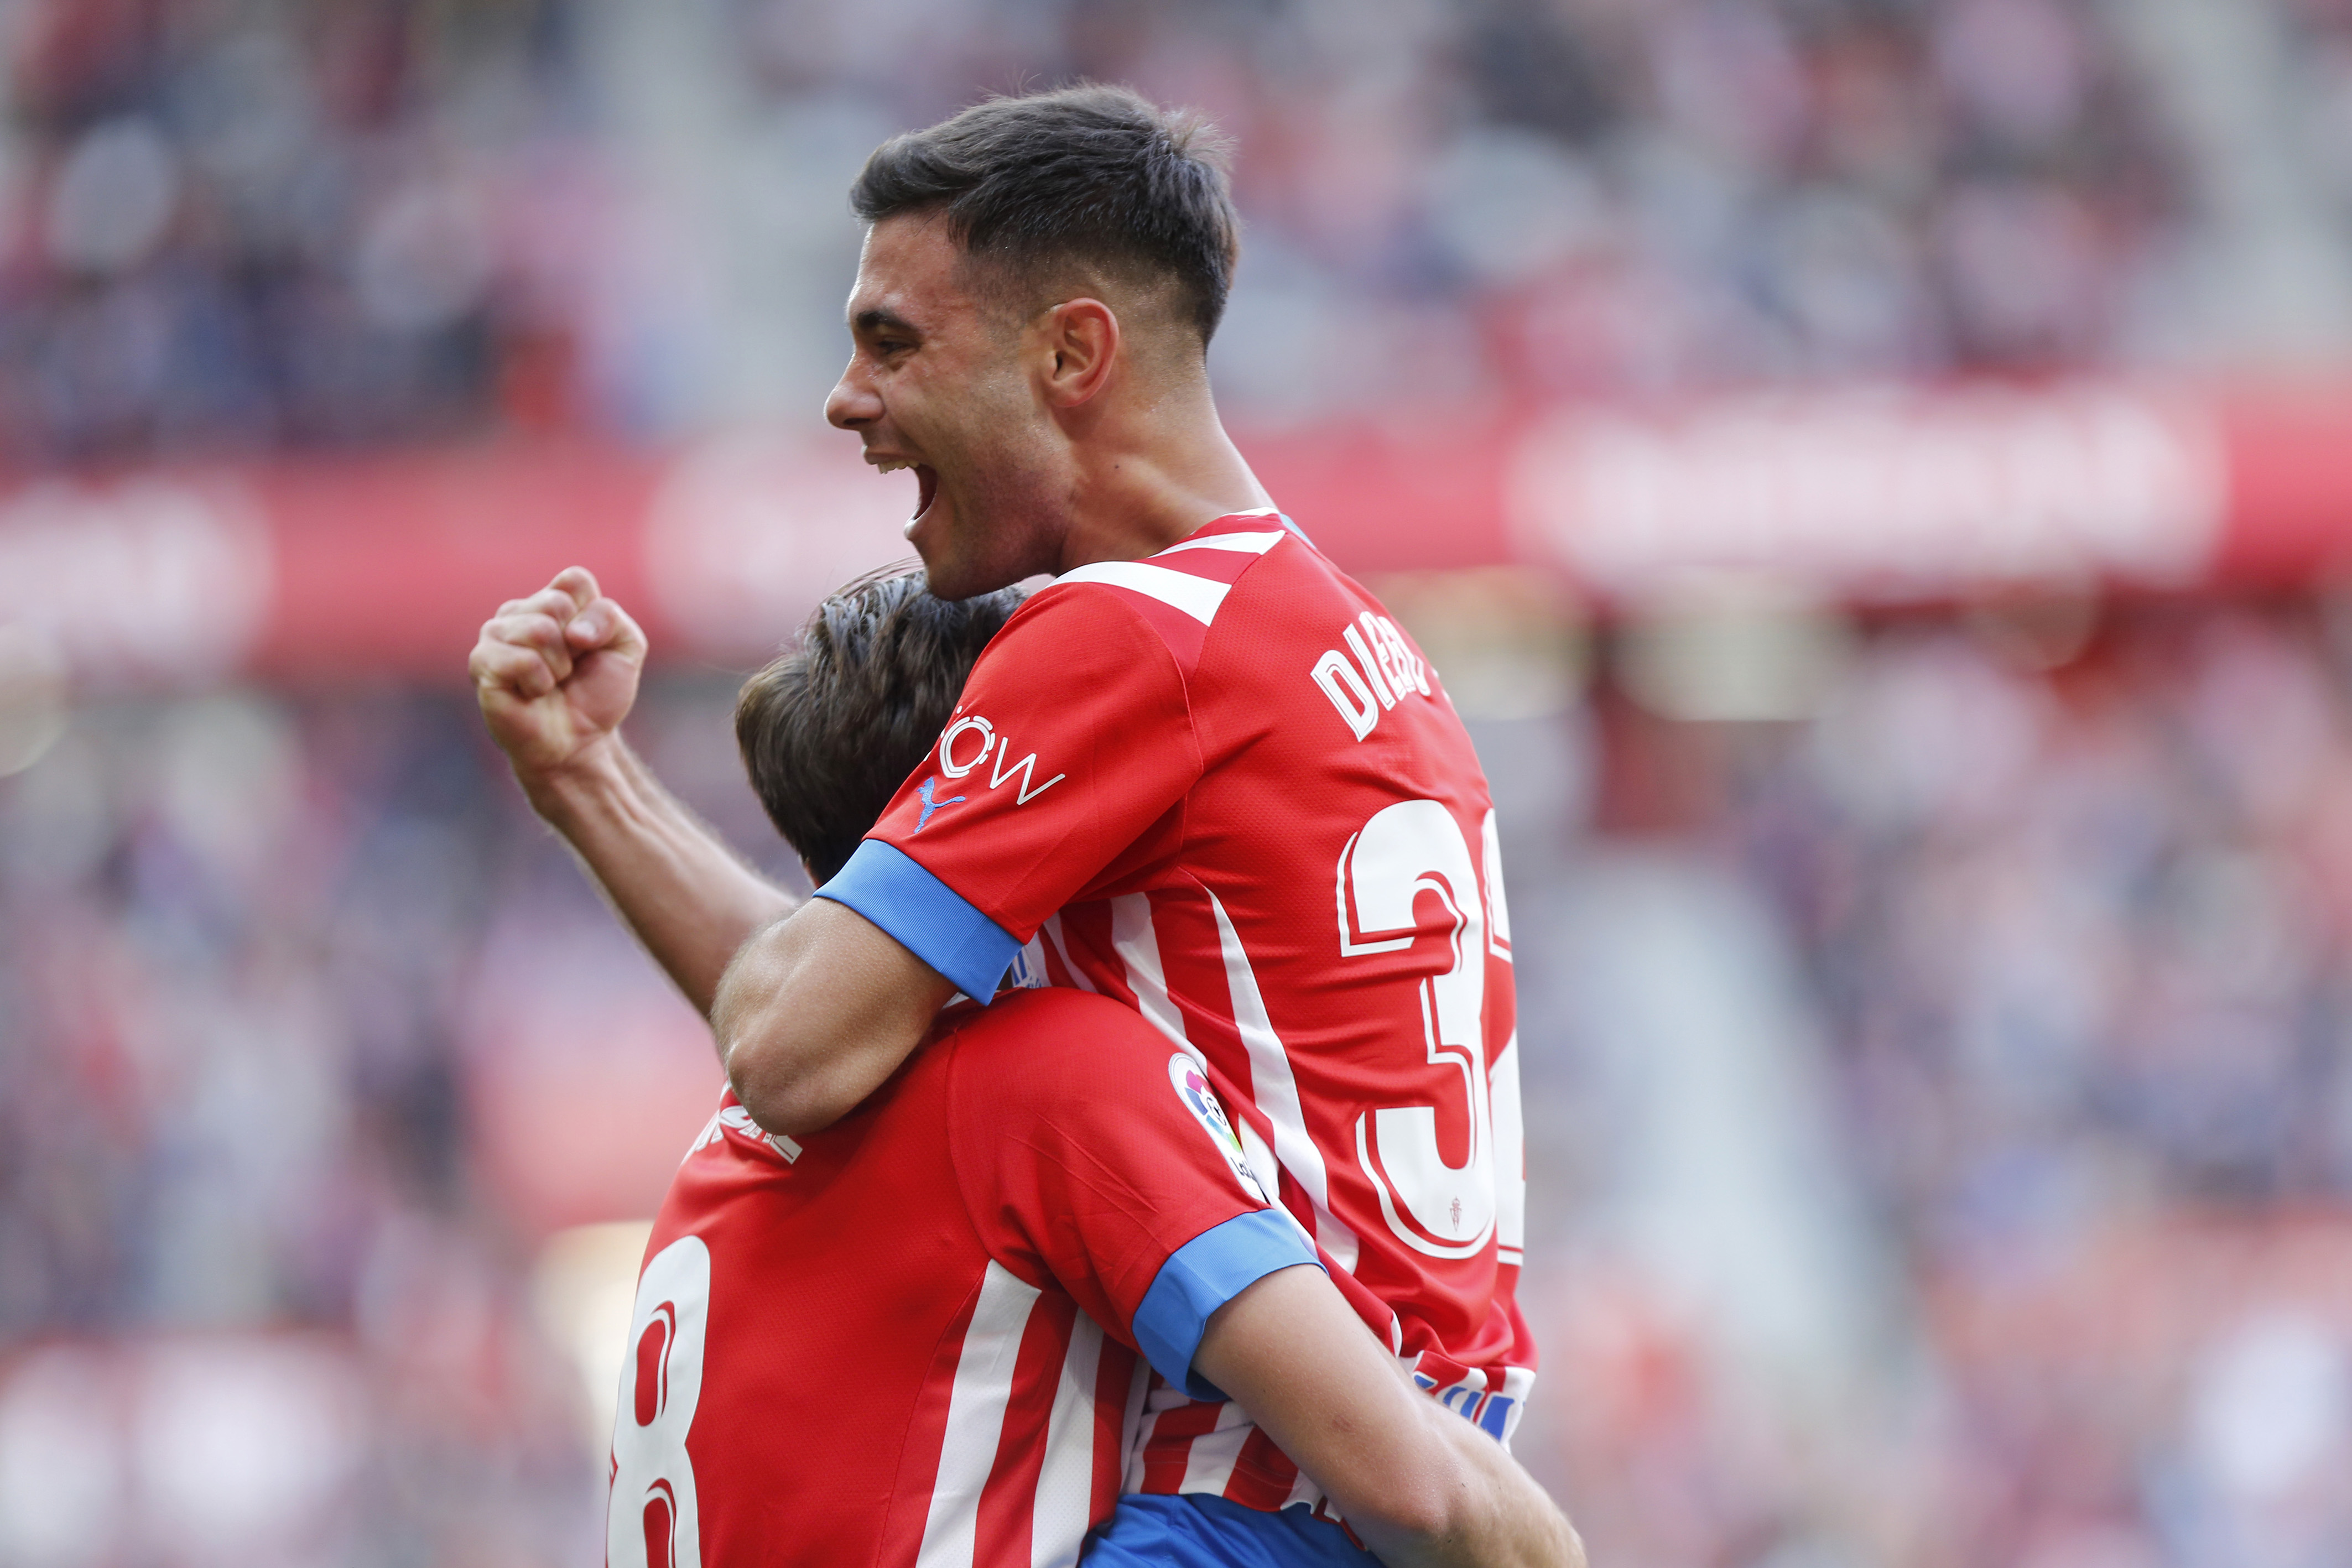 Un gol de Diego Sánchez rompe los pronósticos en Gijón